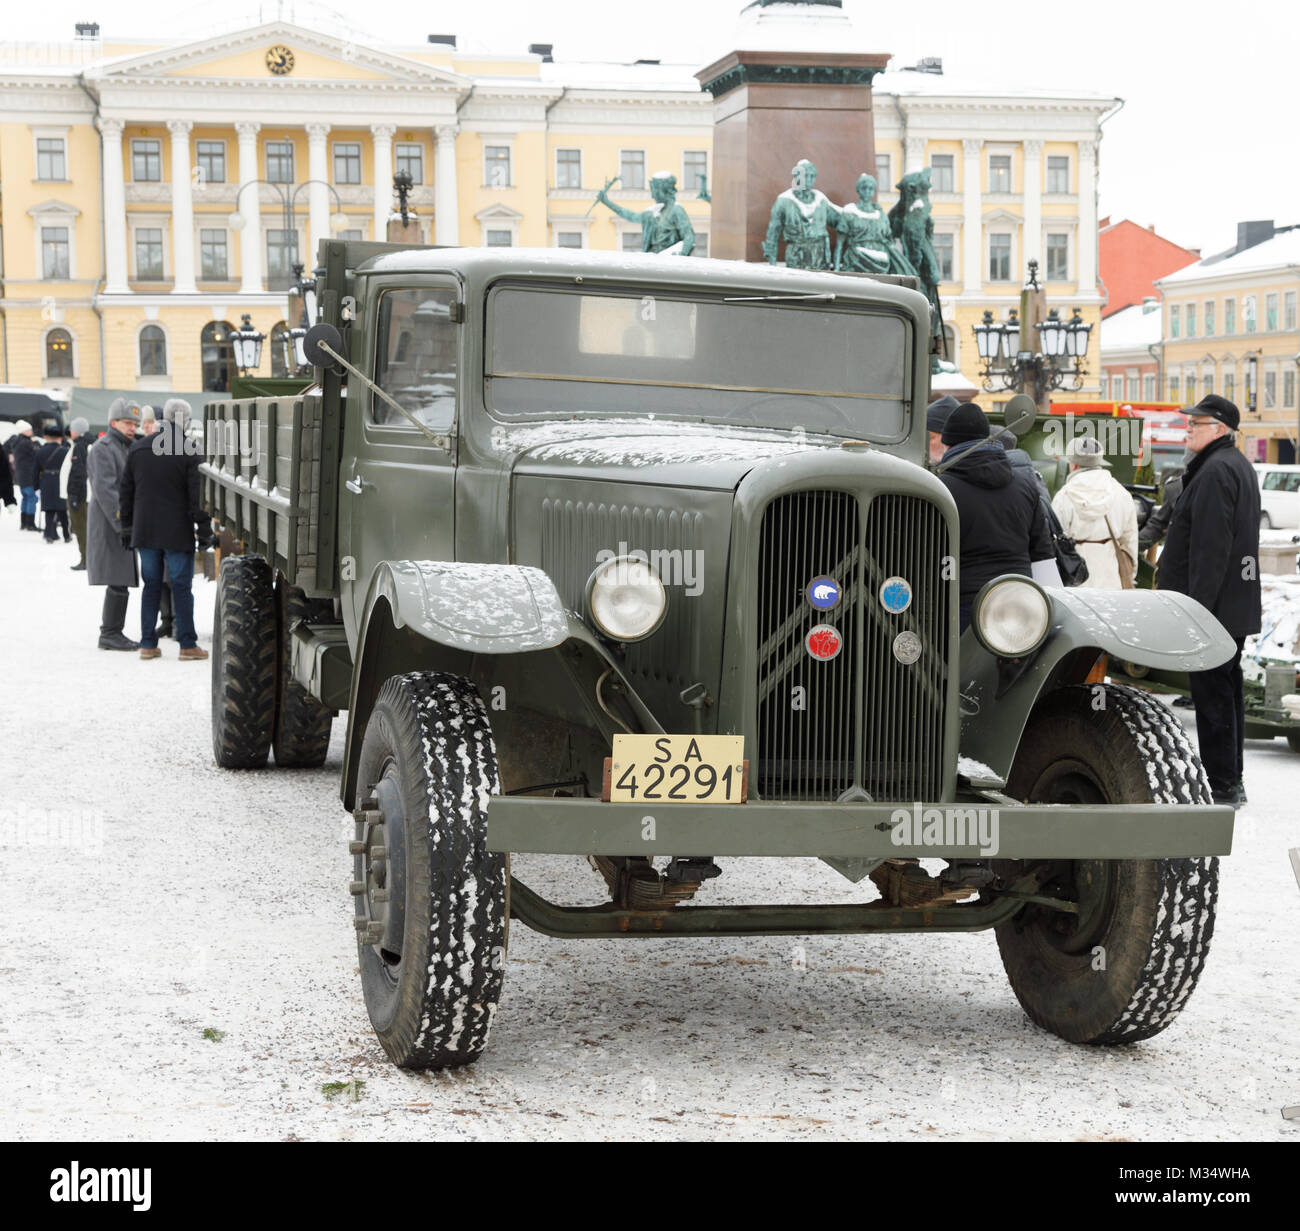 An die 100 Jahre Geschichte der Artillerie in unabhängigen Finnland gedenken, einer öffentlichen Veranstaltung wurde auf dem Senatsplatz in Helsinki am 9. Februar 2018 angeordnet. Es war eine Anzeige historischer Ausrüstung, einschließlich dieser Citroen Lkw, der für die Logistik Service während des Zweiten Weltkriegs zur Verfügung. Stockfoto